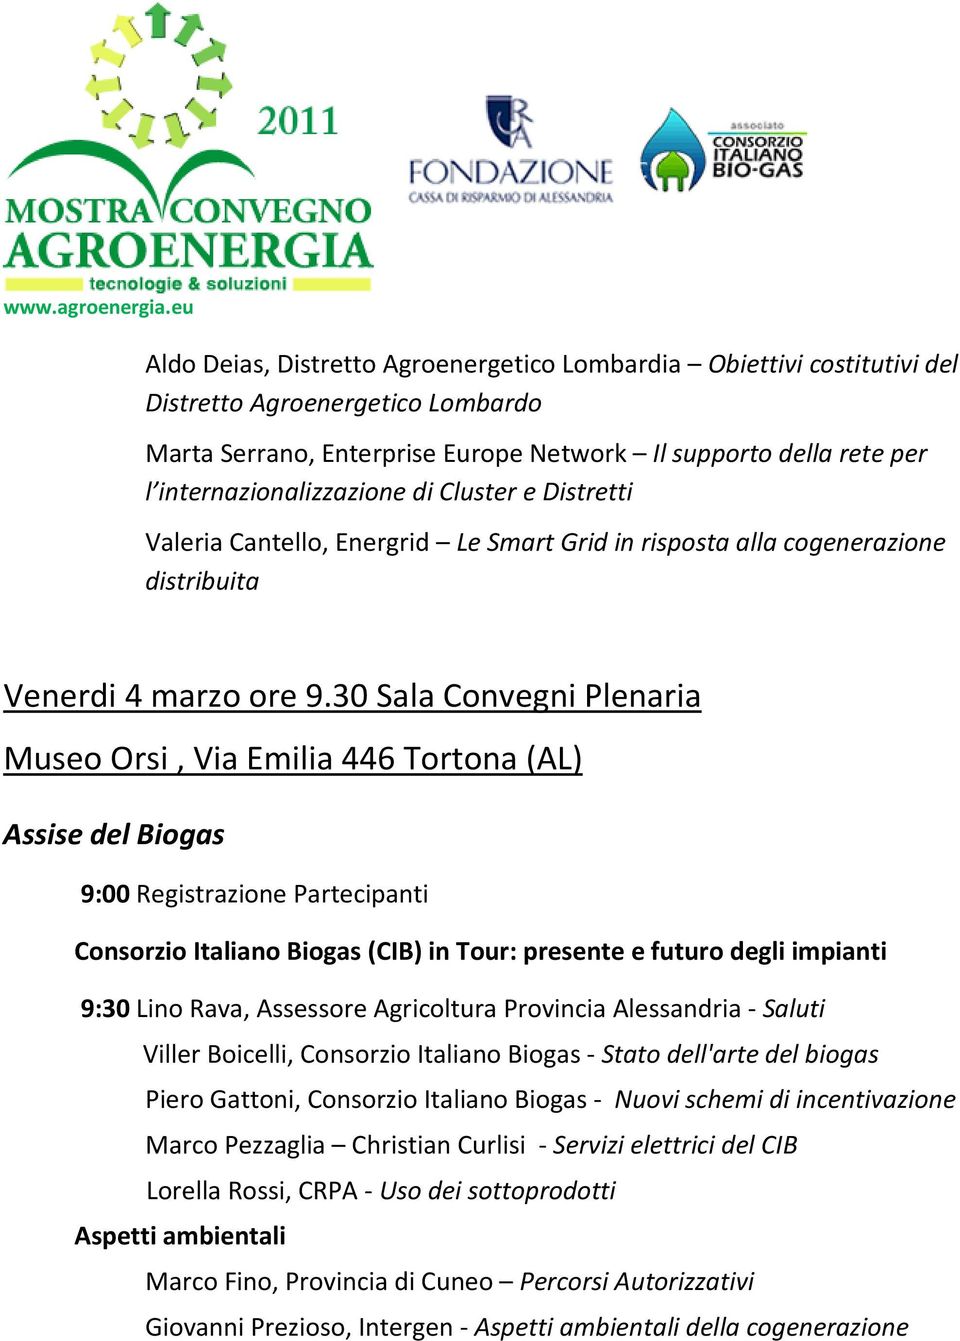 30 Sala Convegni Plenaria Museo Orsi, Via Emilia 446 Tortona (AL) Assise del Biogas 9:00 Registrazione Partecipanti Consorzio Italiano Biogas (CIB) in Tour: presente e futuro degli impianti 9:30 Lino